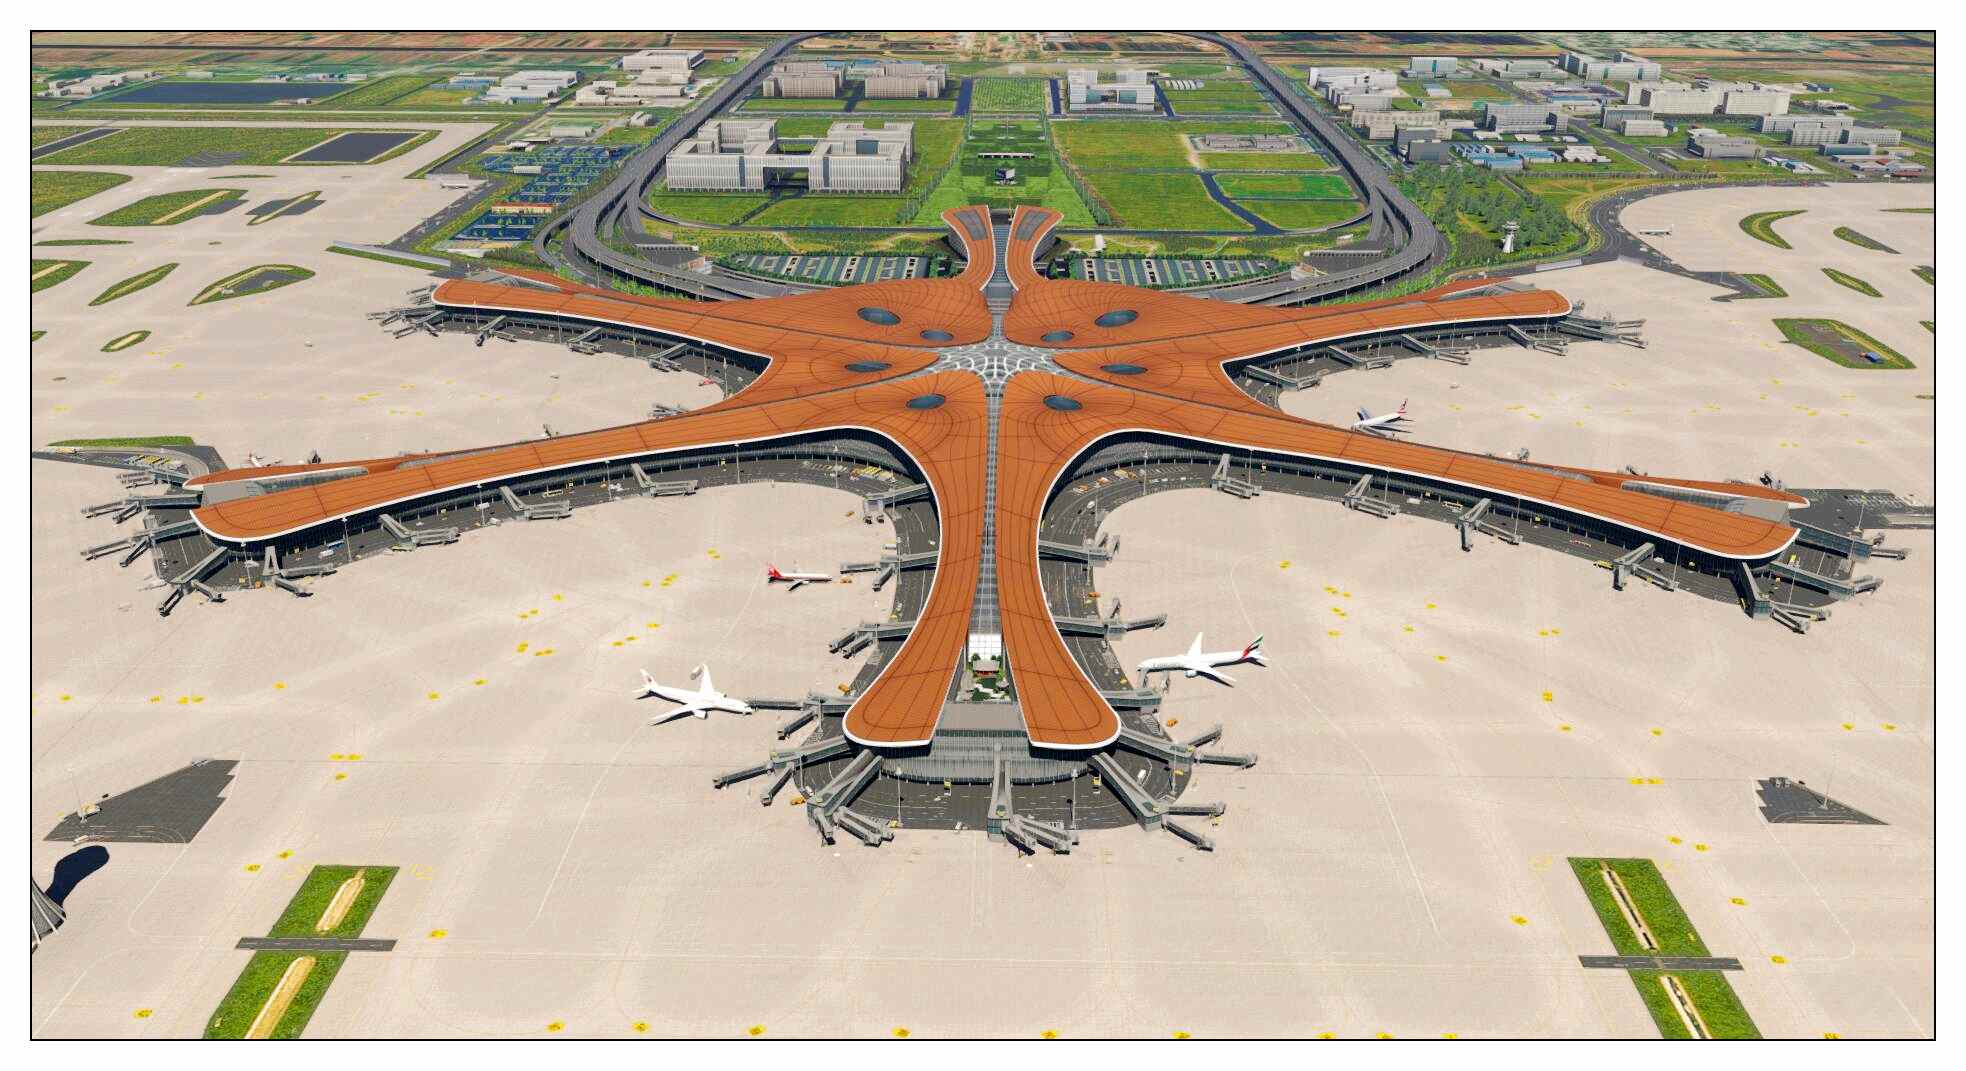 【X-Plane】ZBAD北京大兴国际机场-正式发布-8284 